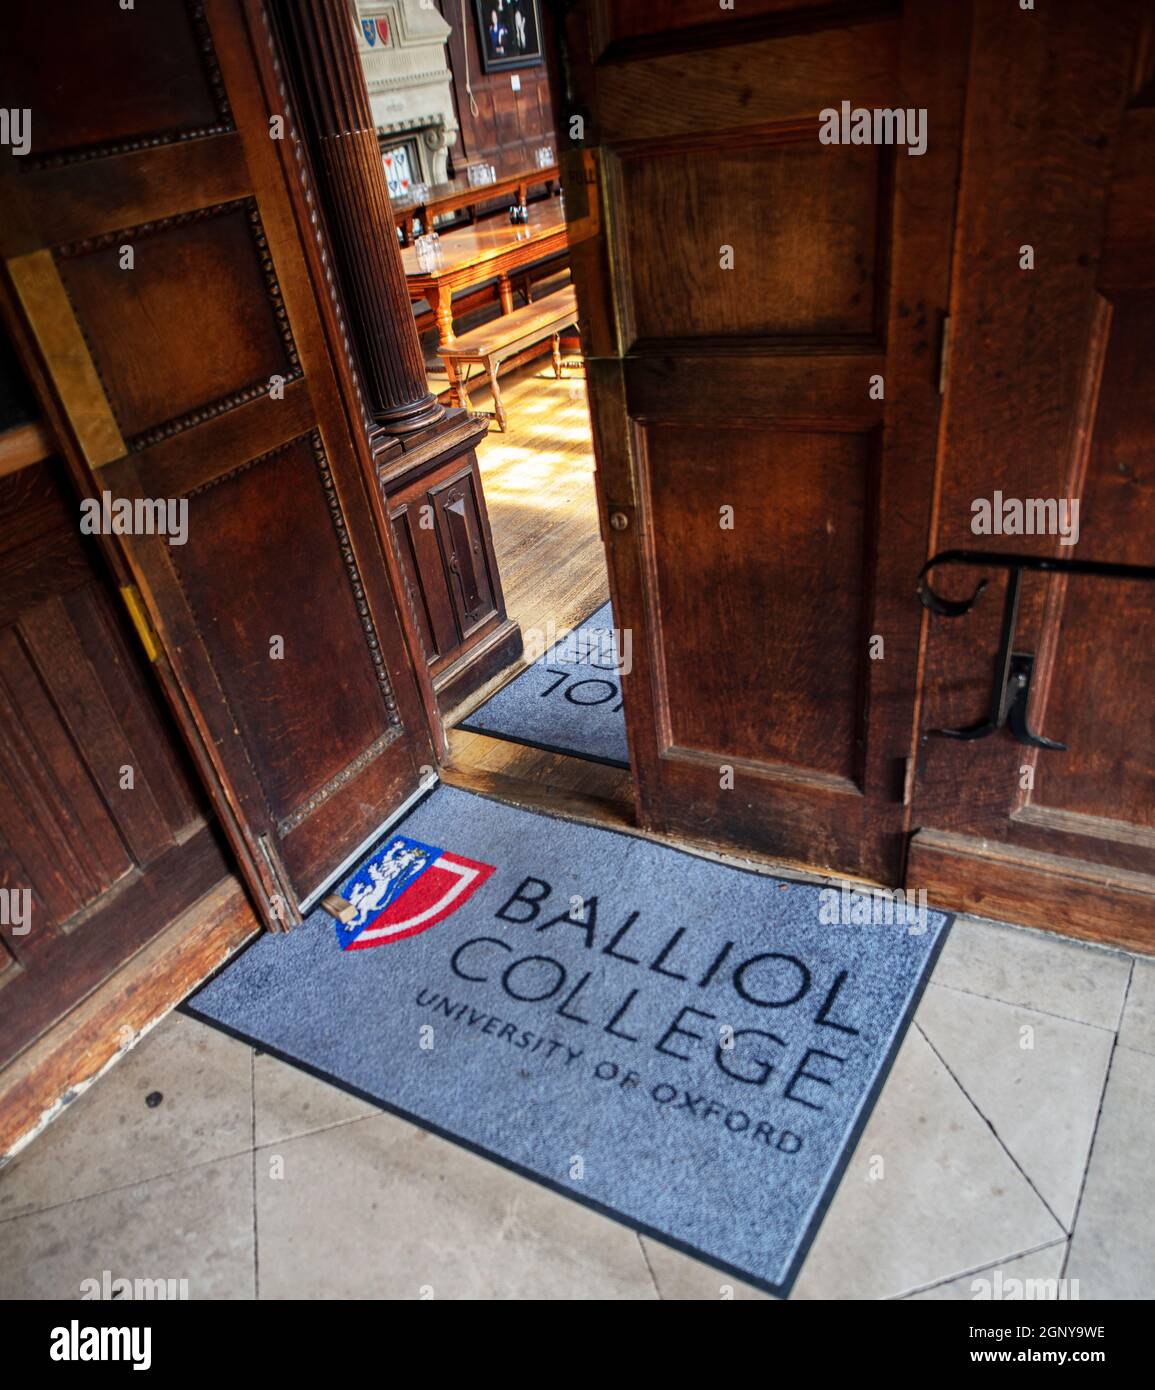 Balliol College, Oxford, uno dei college costitutivi dell'Università di Oxford, fondato nel 1263; tappeto stampato con cresta dell'università all'ingresso della Hall Foto Stock